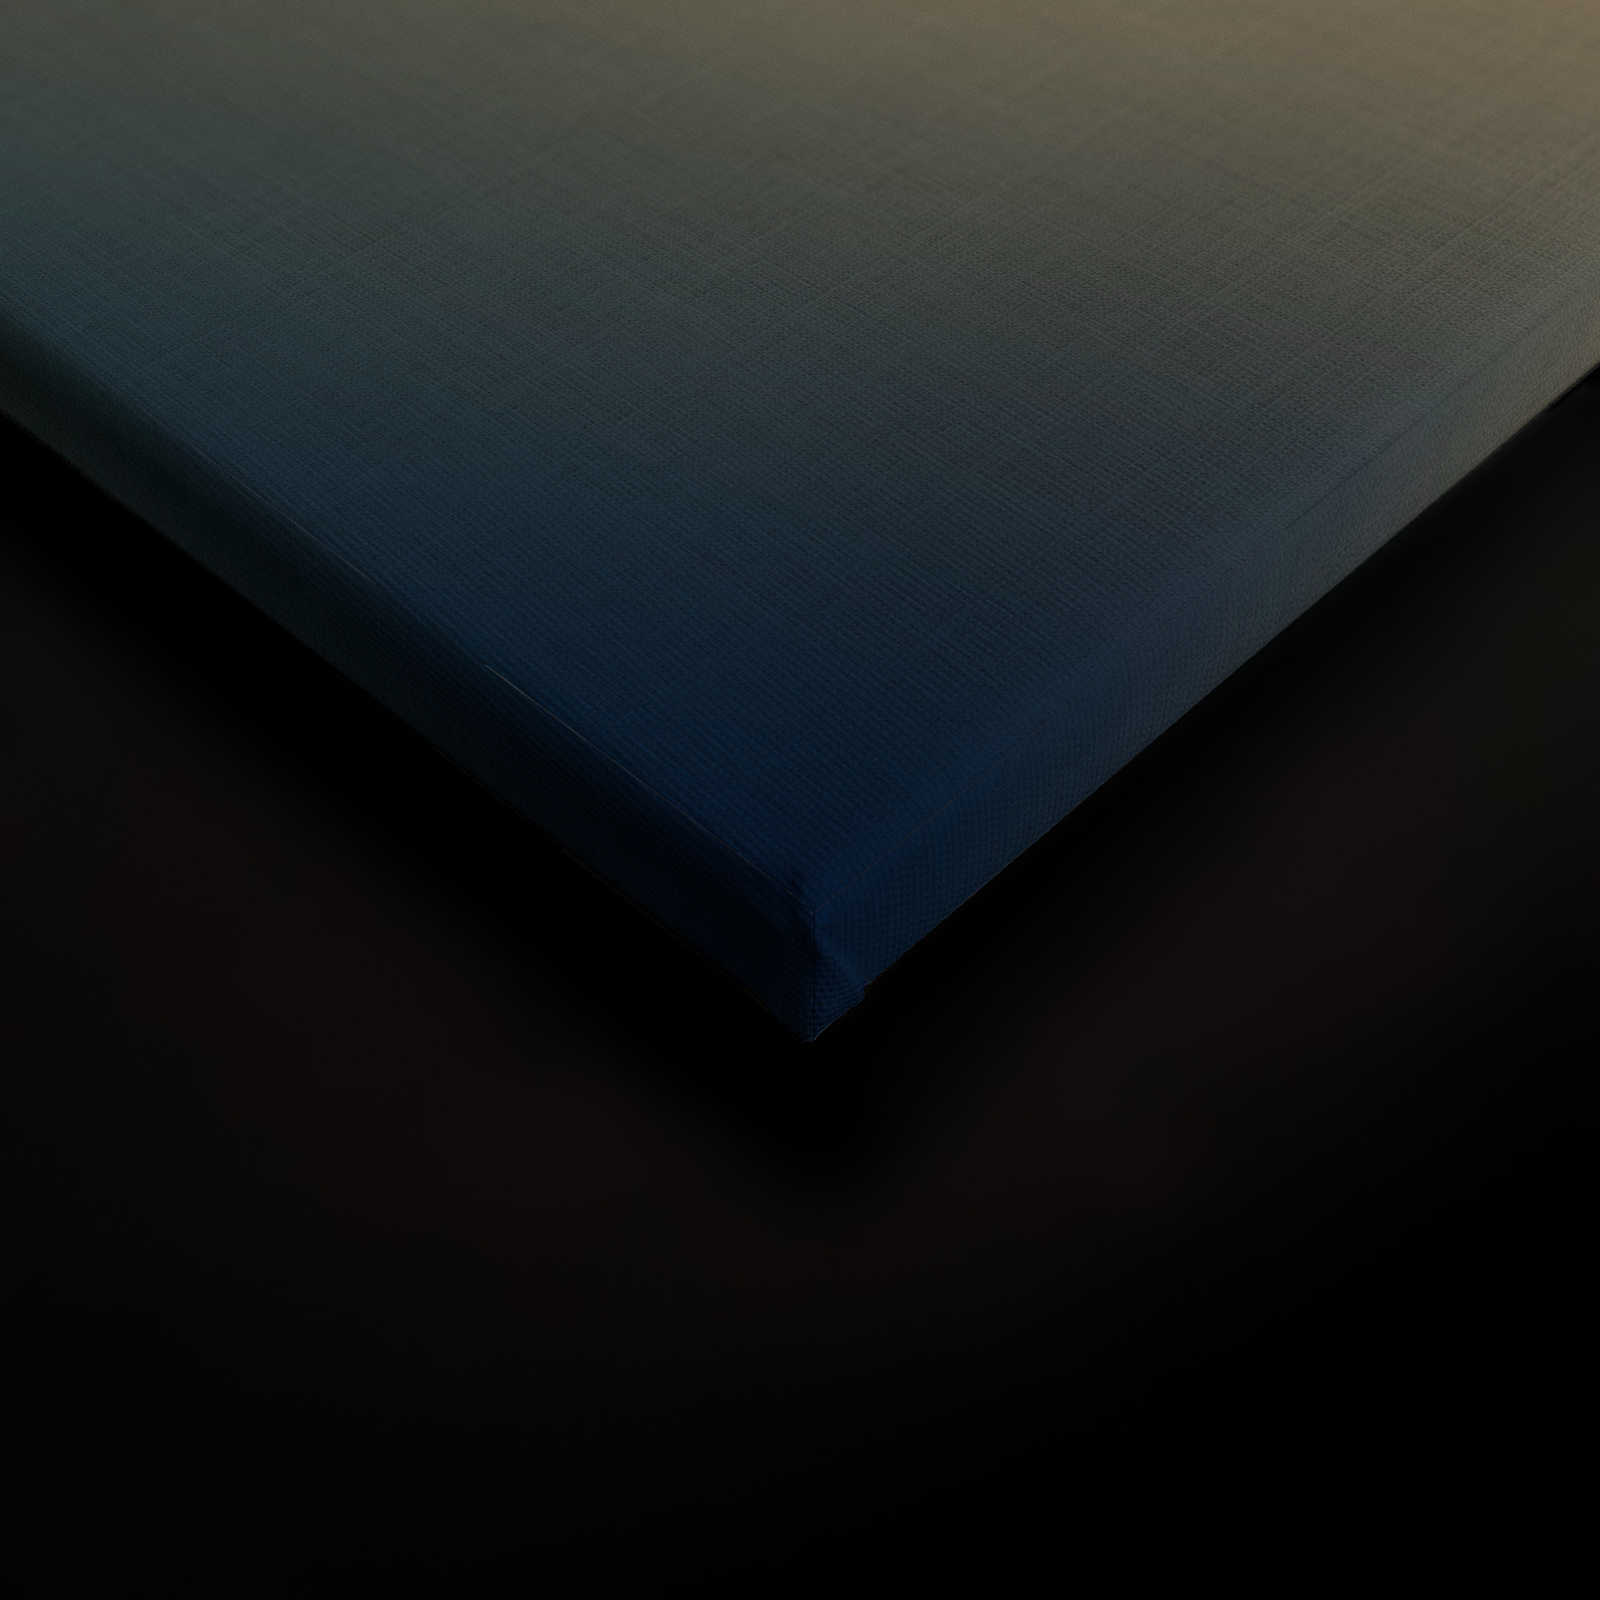             La bohème 2 - toile look bohème dans les tons beiges - structure lin naturel - 0,90 m x 0,60 m
        